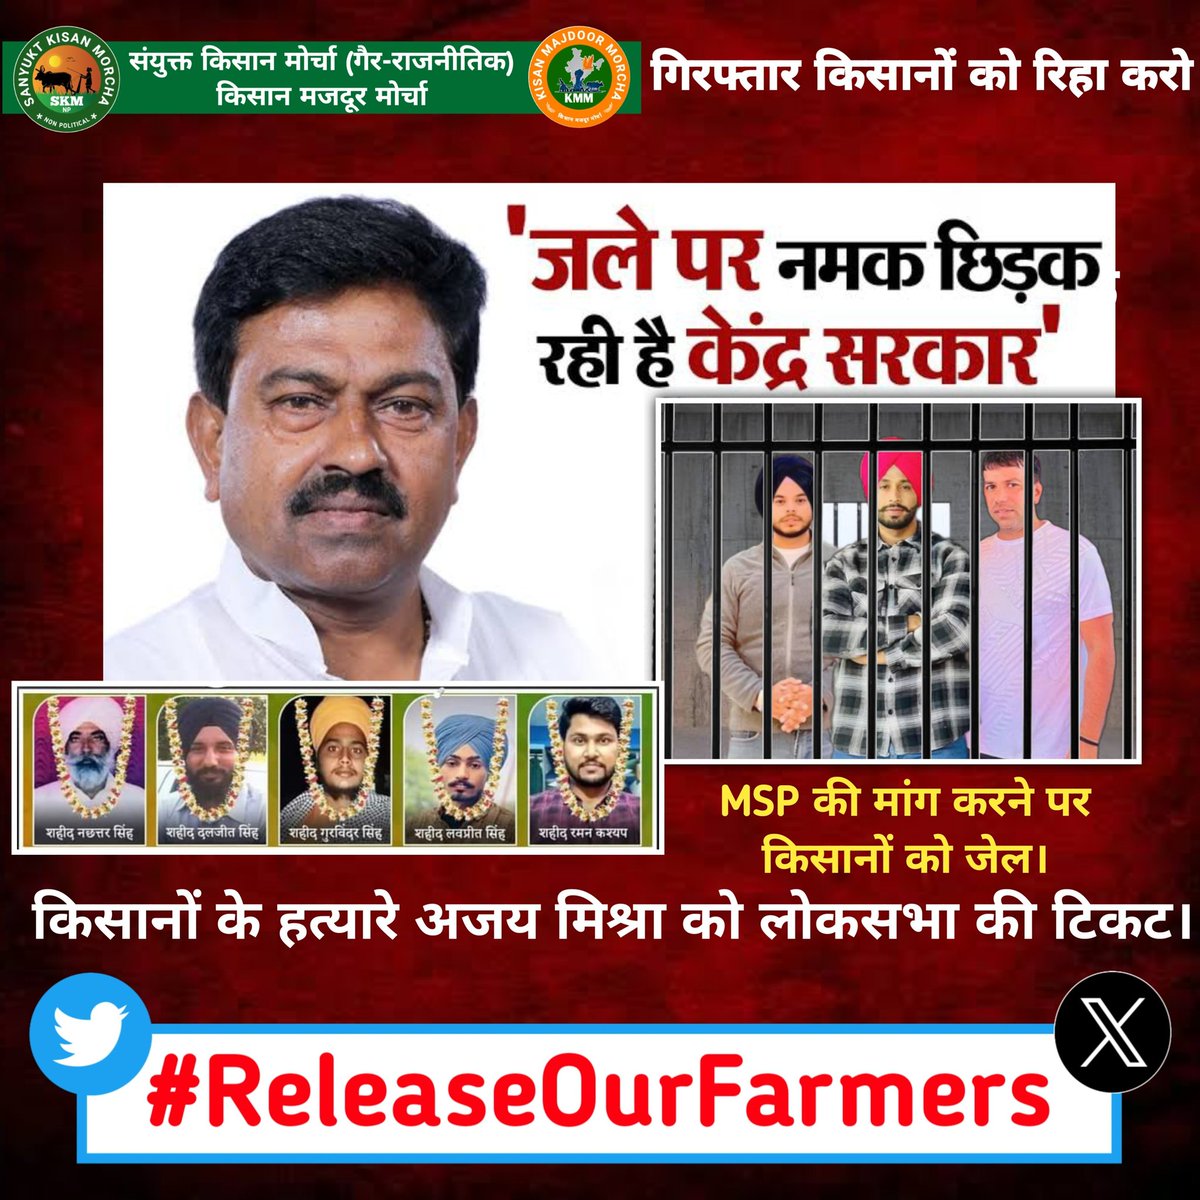 लखीमपुर खीरी किसानों के हत्यारे अजय मिश्रा को लोकसभा की टिकट, MSP की मांग करने पर बेकसूर किसानों को जेल।
Use this Hashtag👇👇
#ReleaseOurFarmers
#ReleaseOurFarmers